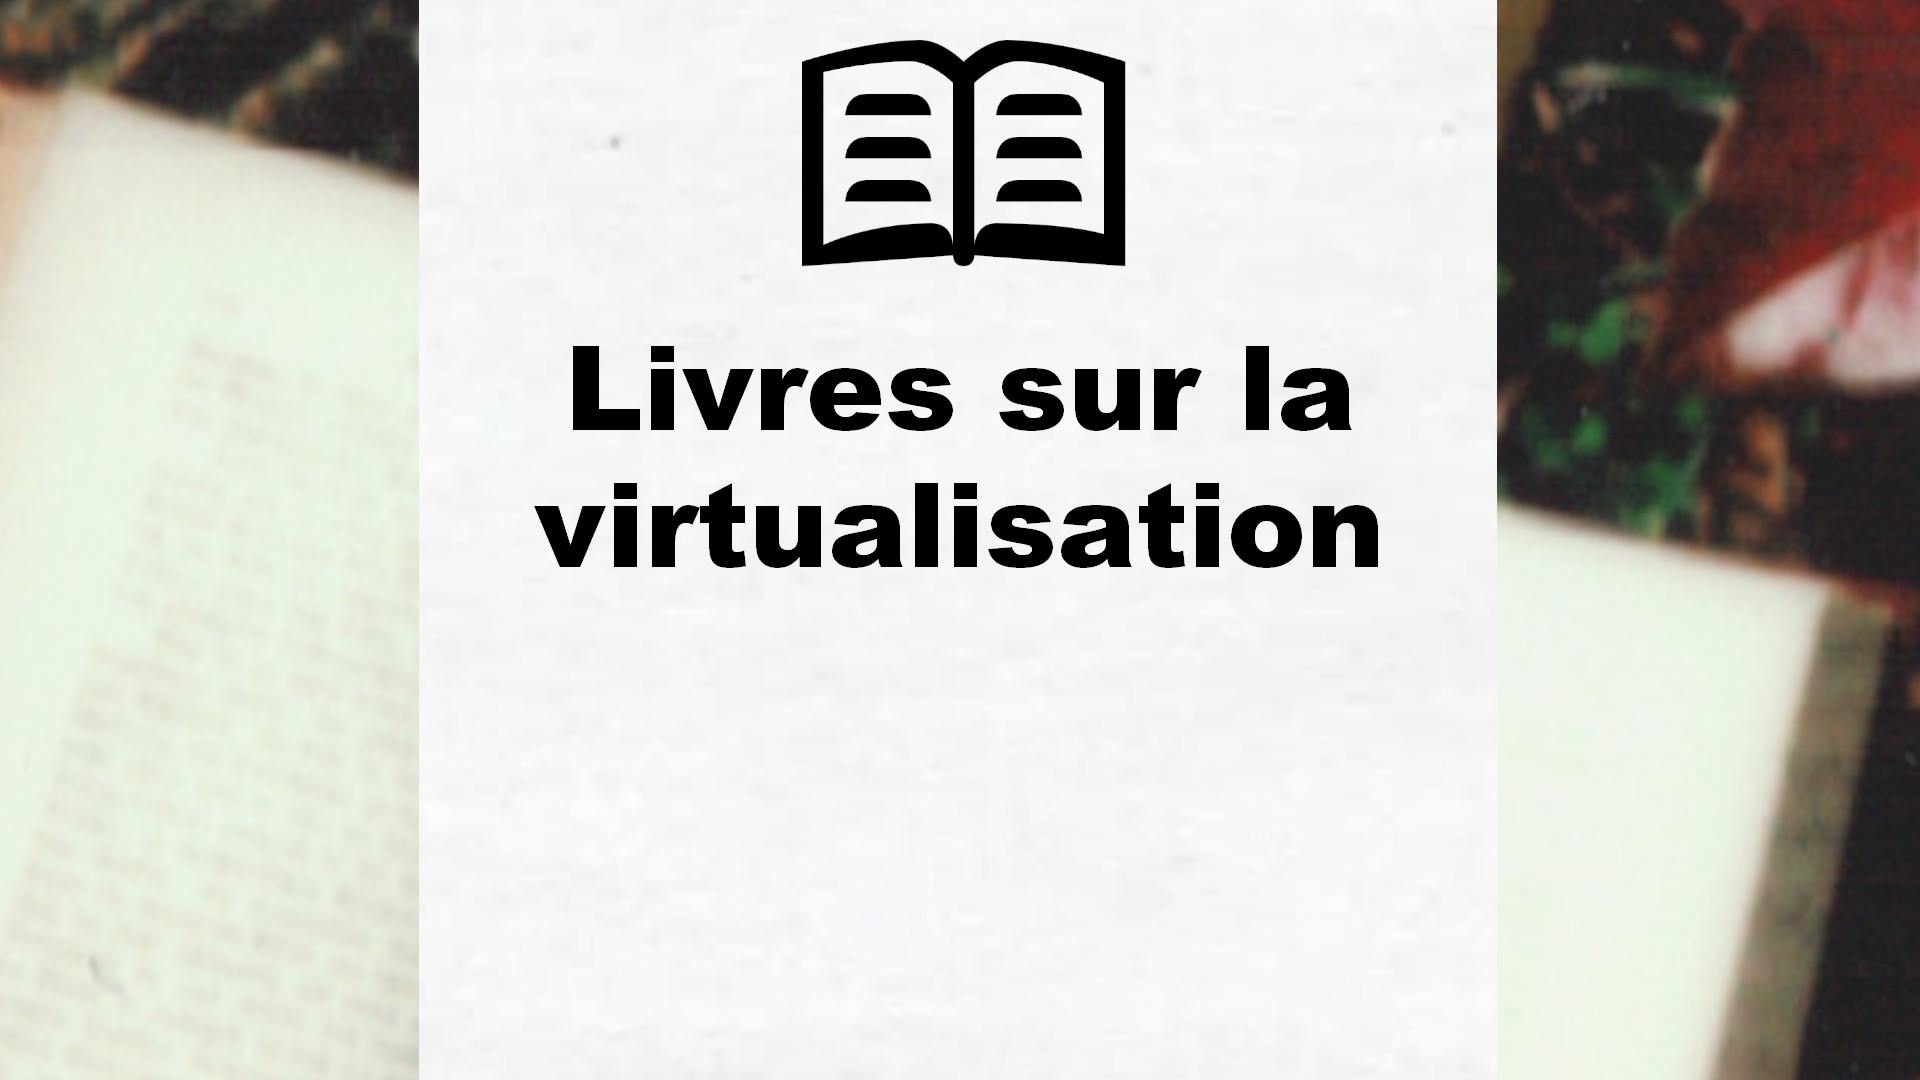 Livres sur la virtualisation